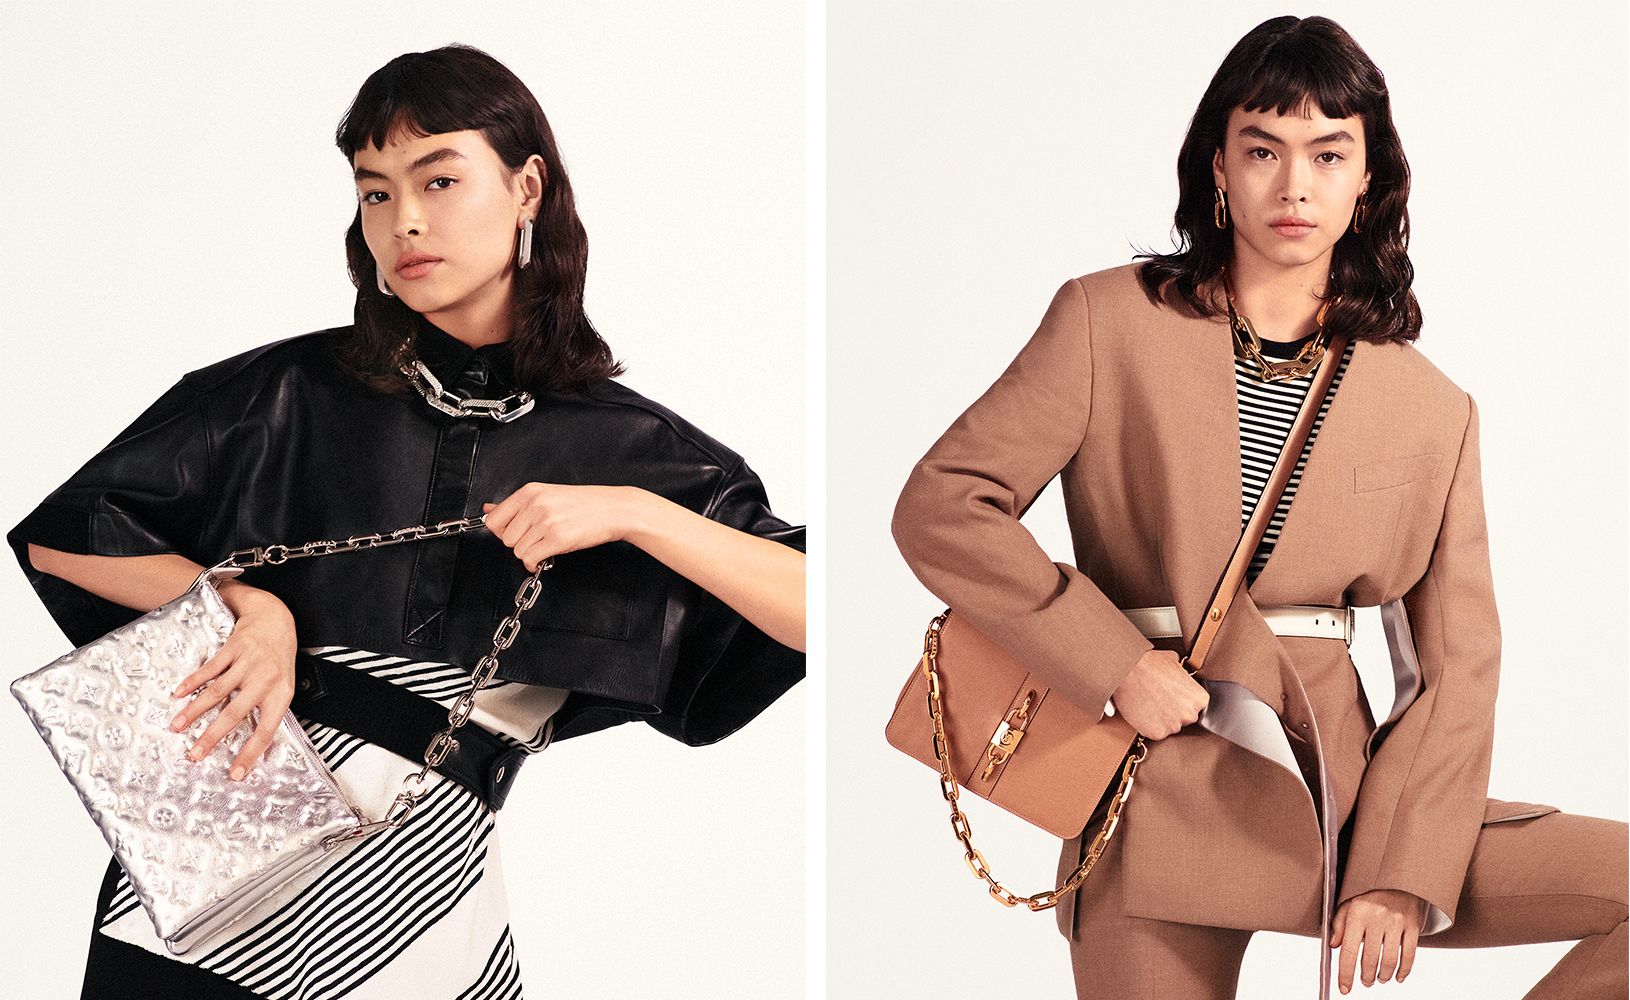 Louis Vuitton to Launch the New Rendez-Vous Bag 